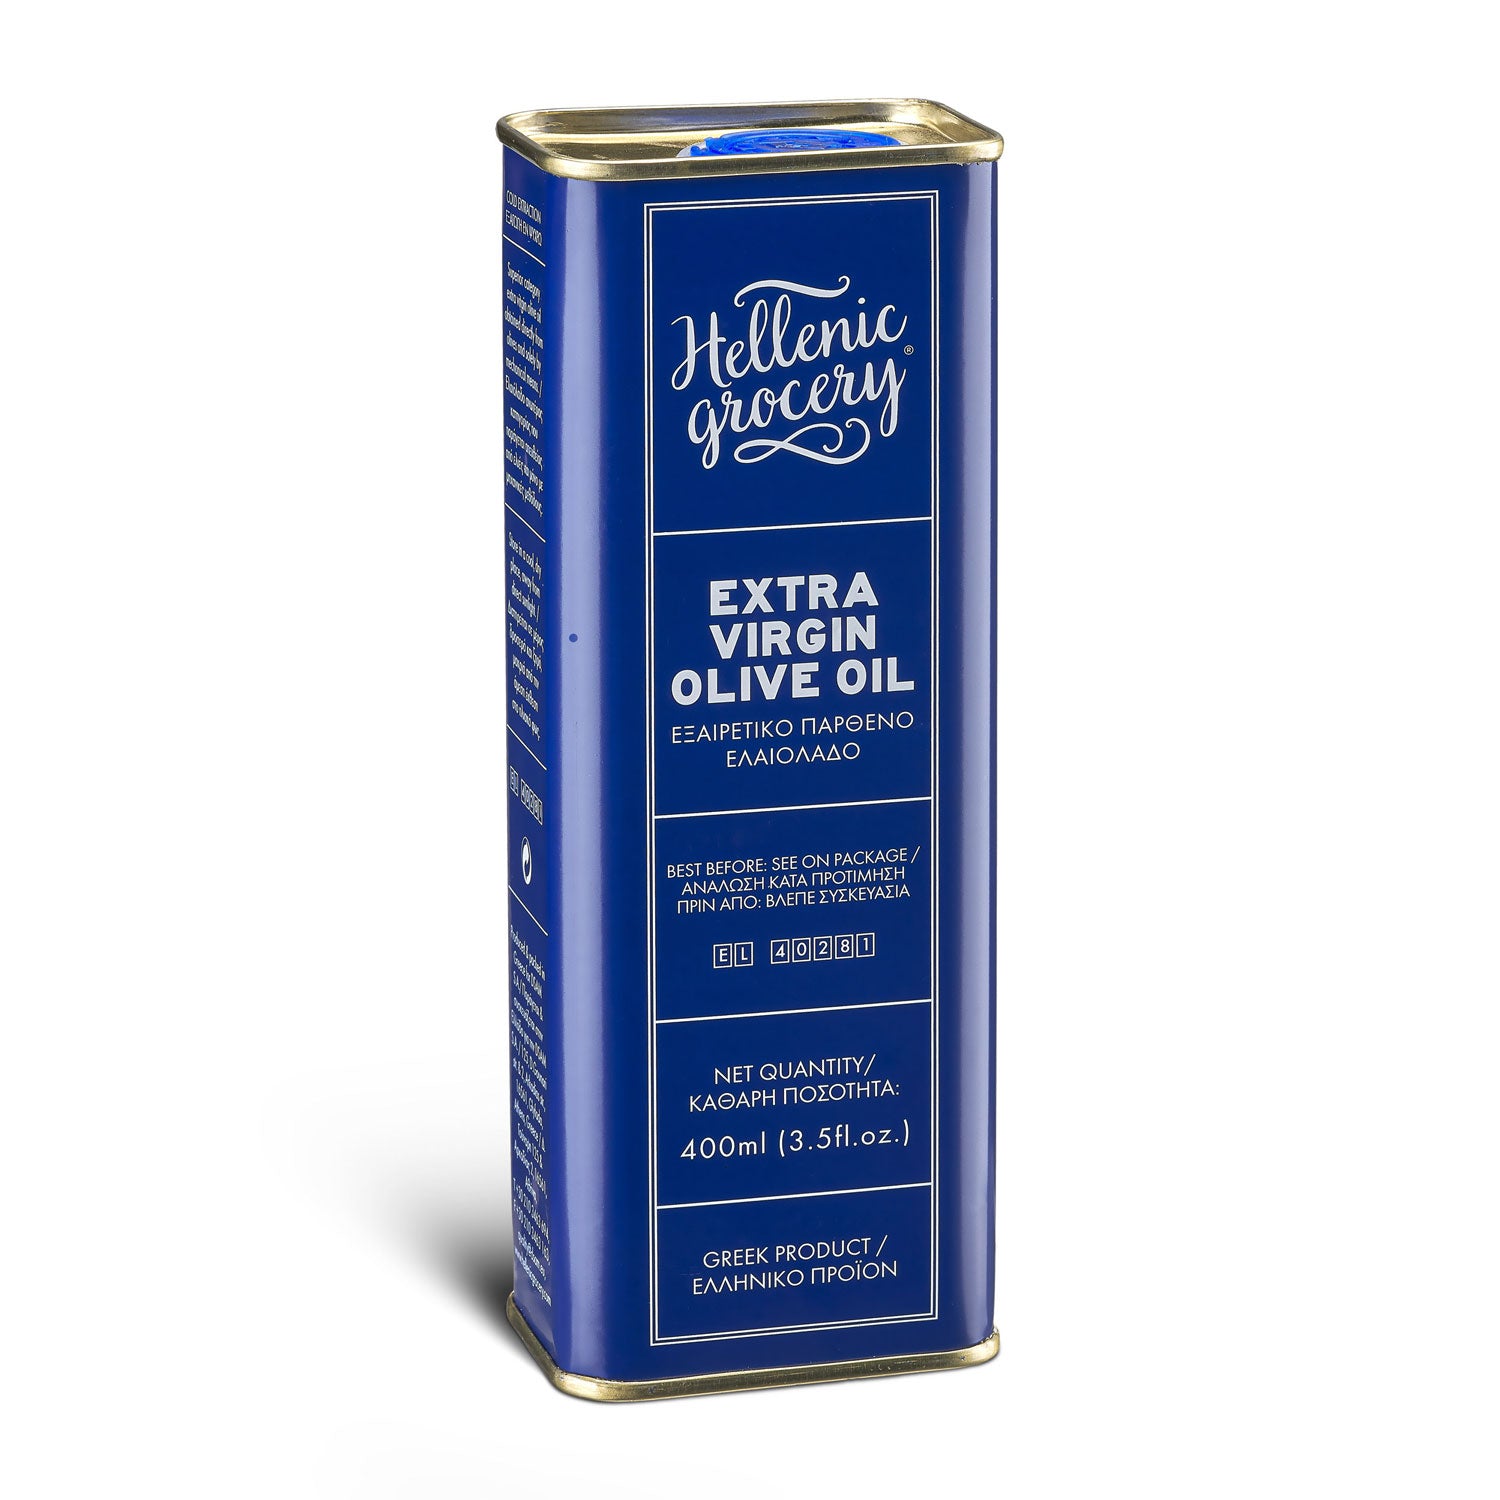 Épicerie-grecque-Produits-grecs-huile-olive-extra-vierge-400ml-blue-hellenic-grocery